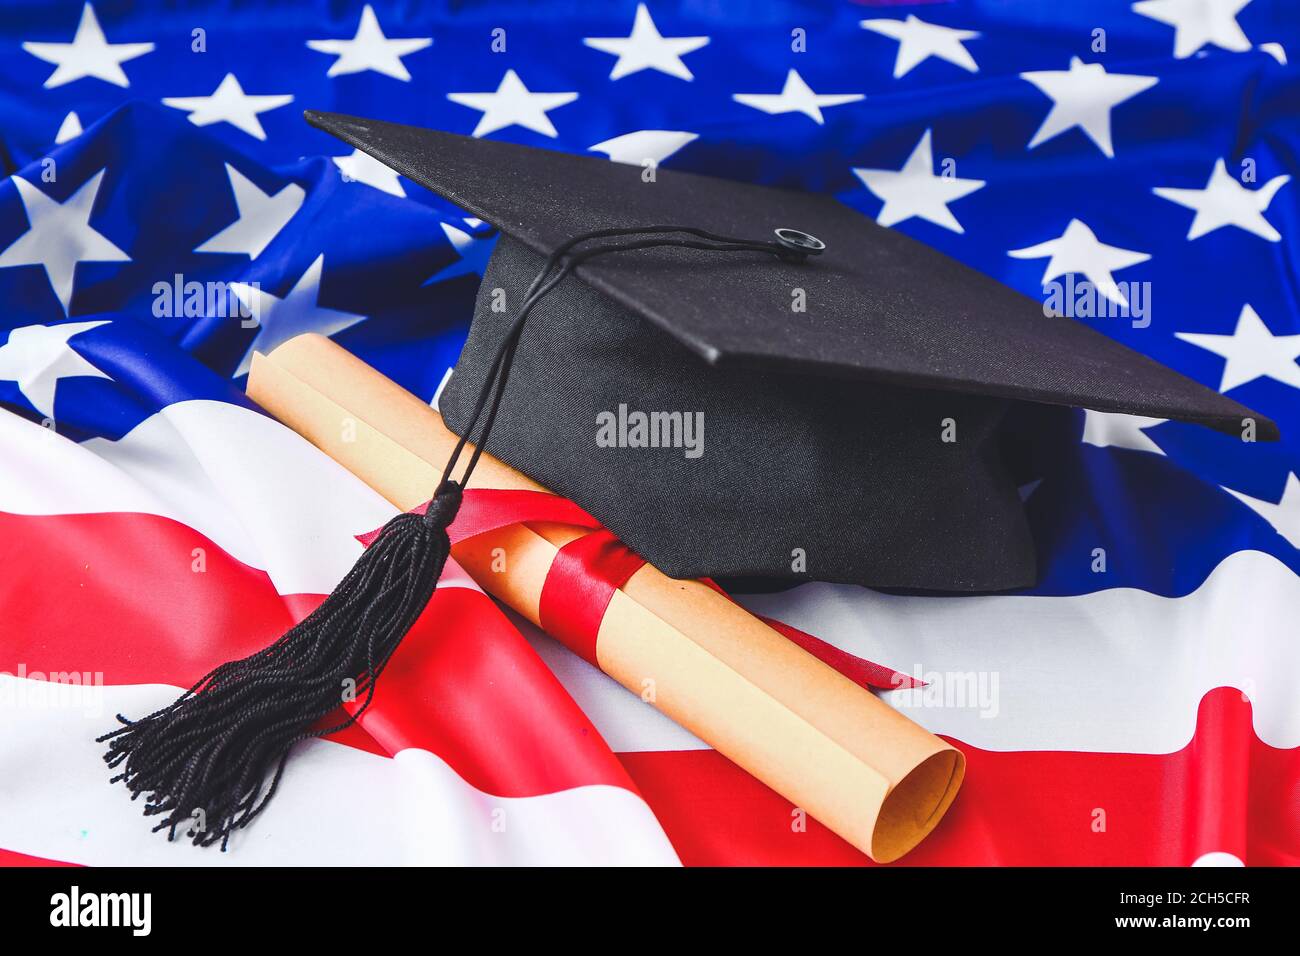 Abschlusshut und Diplom auf USA Flagge Stockfotografie - Alamy